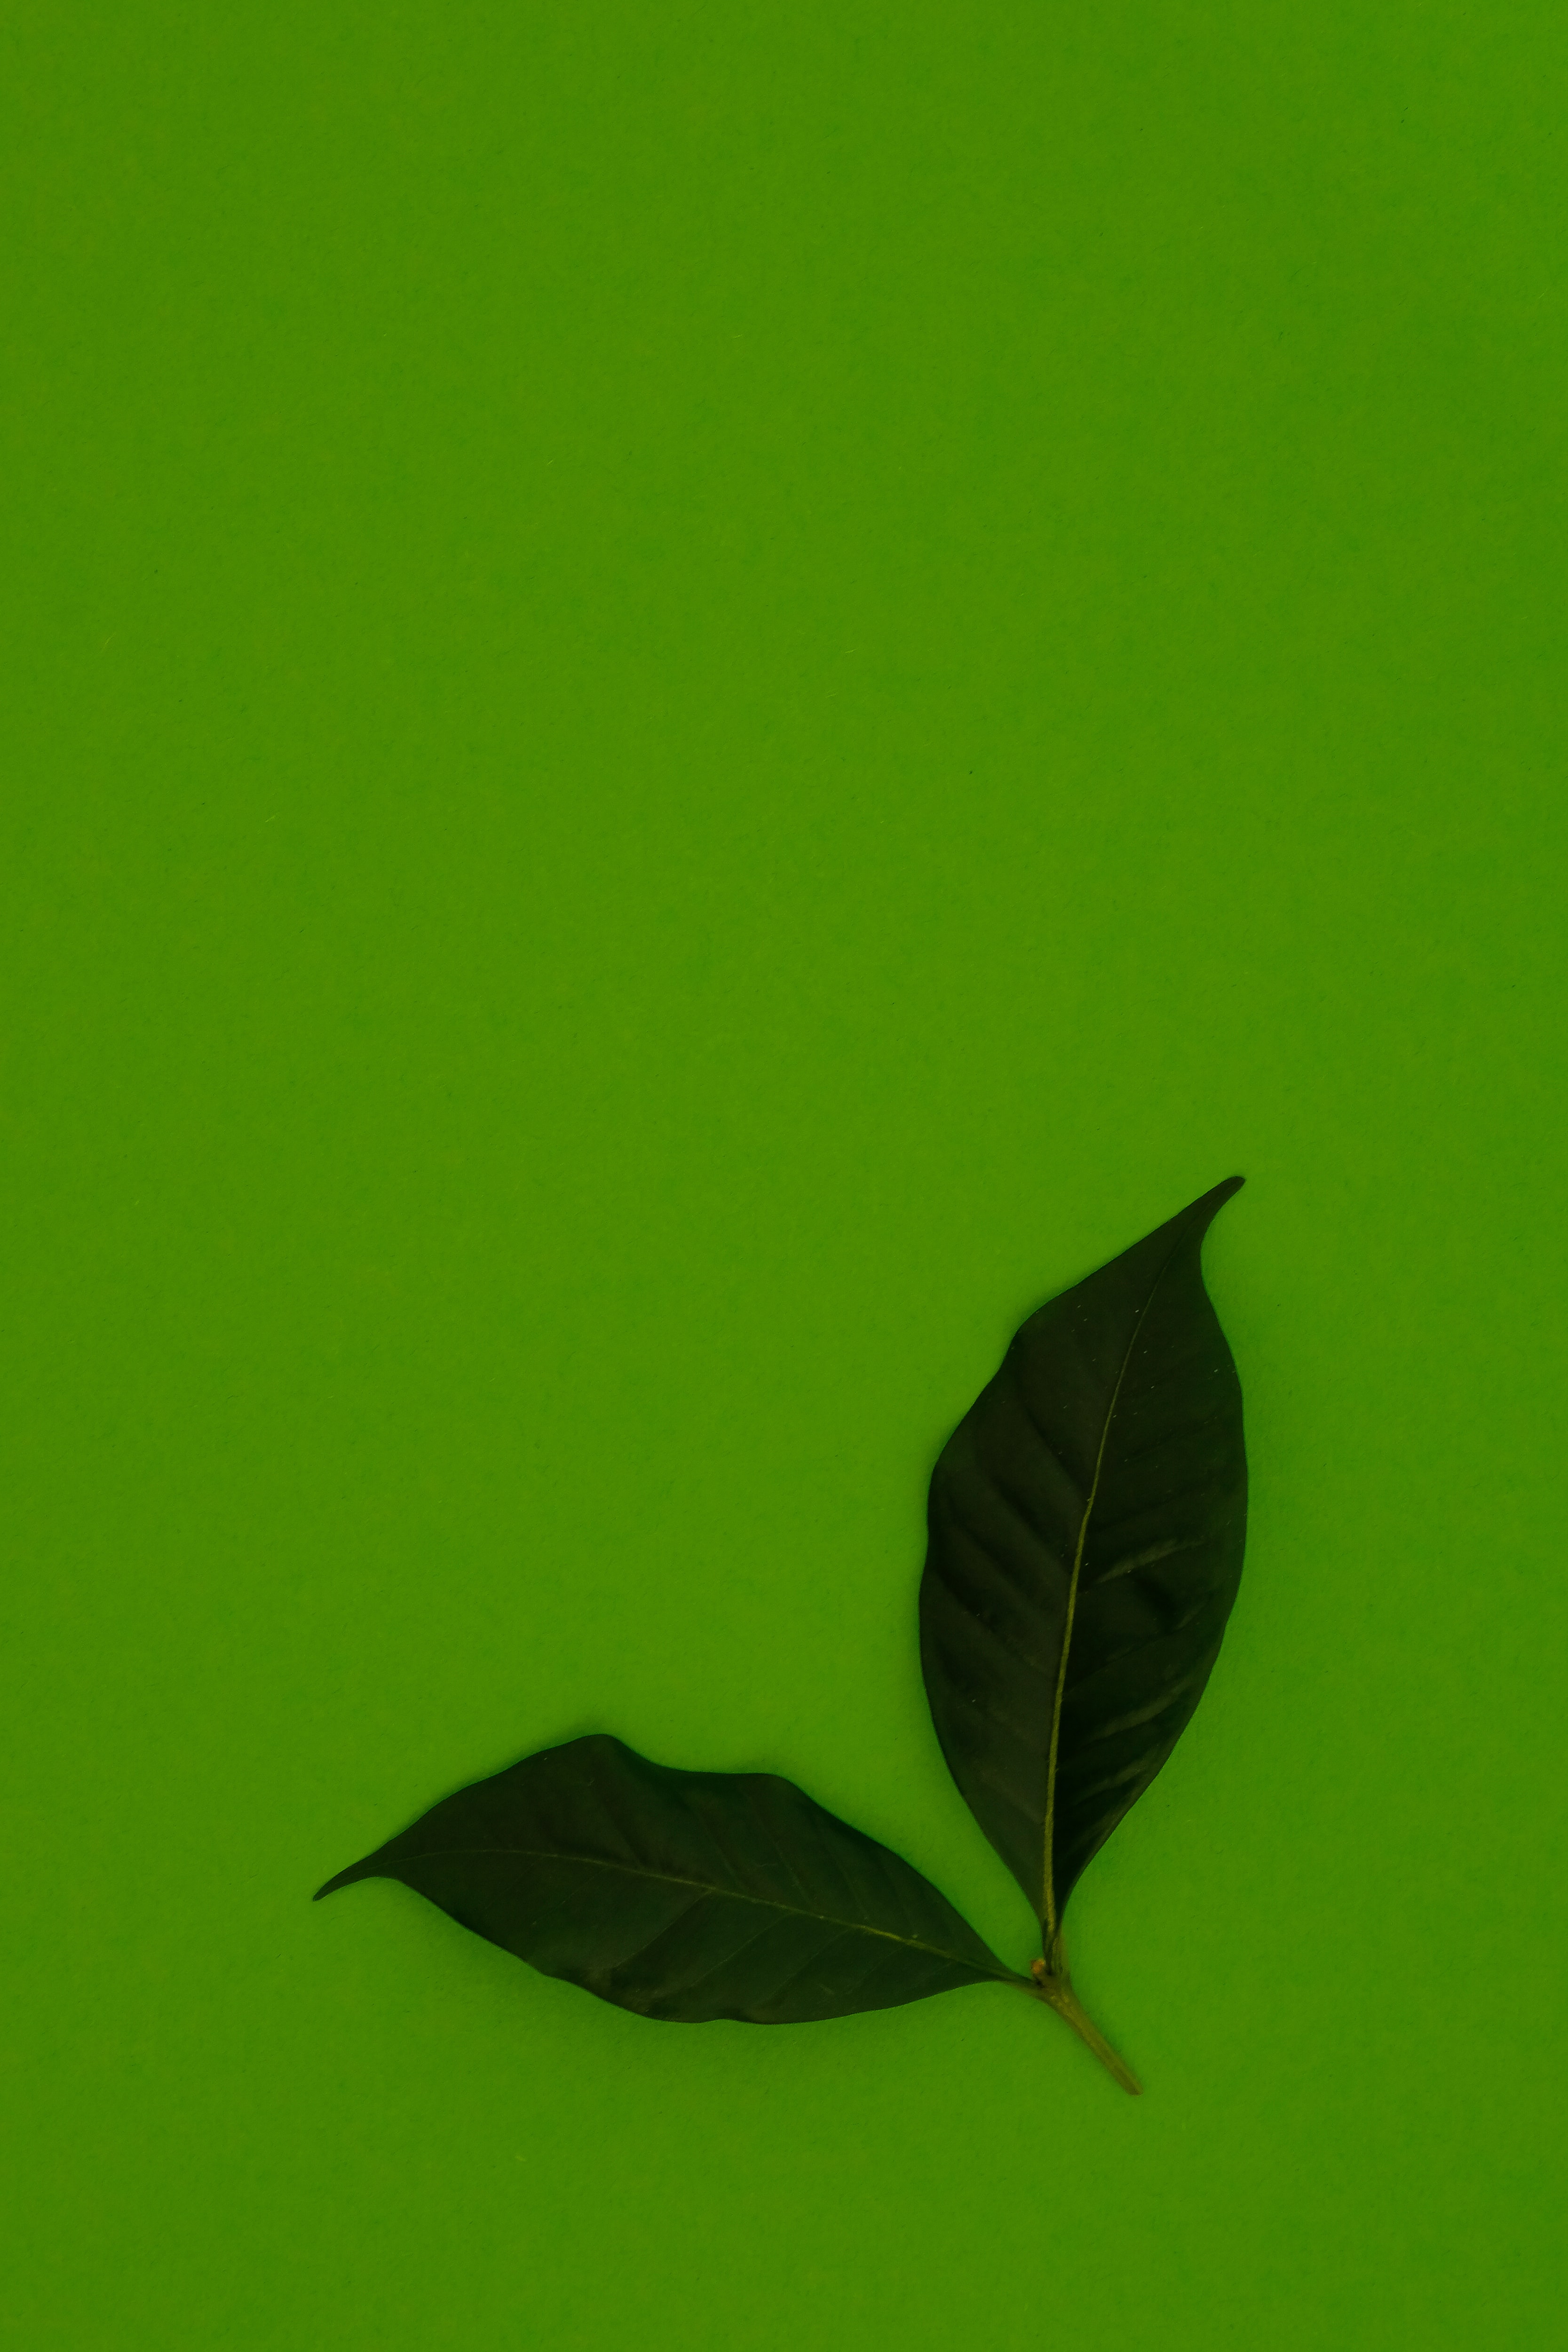 Скачать обои бесплатно Зеленый, Разное, Листья, Фон картинка на рабочий стол ПК